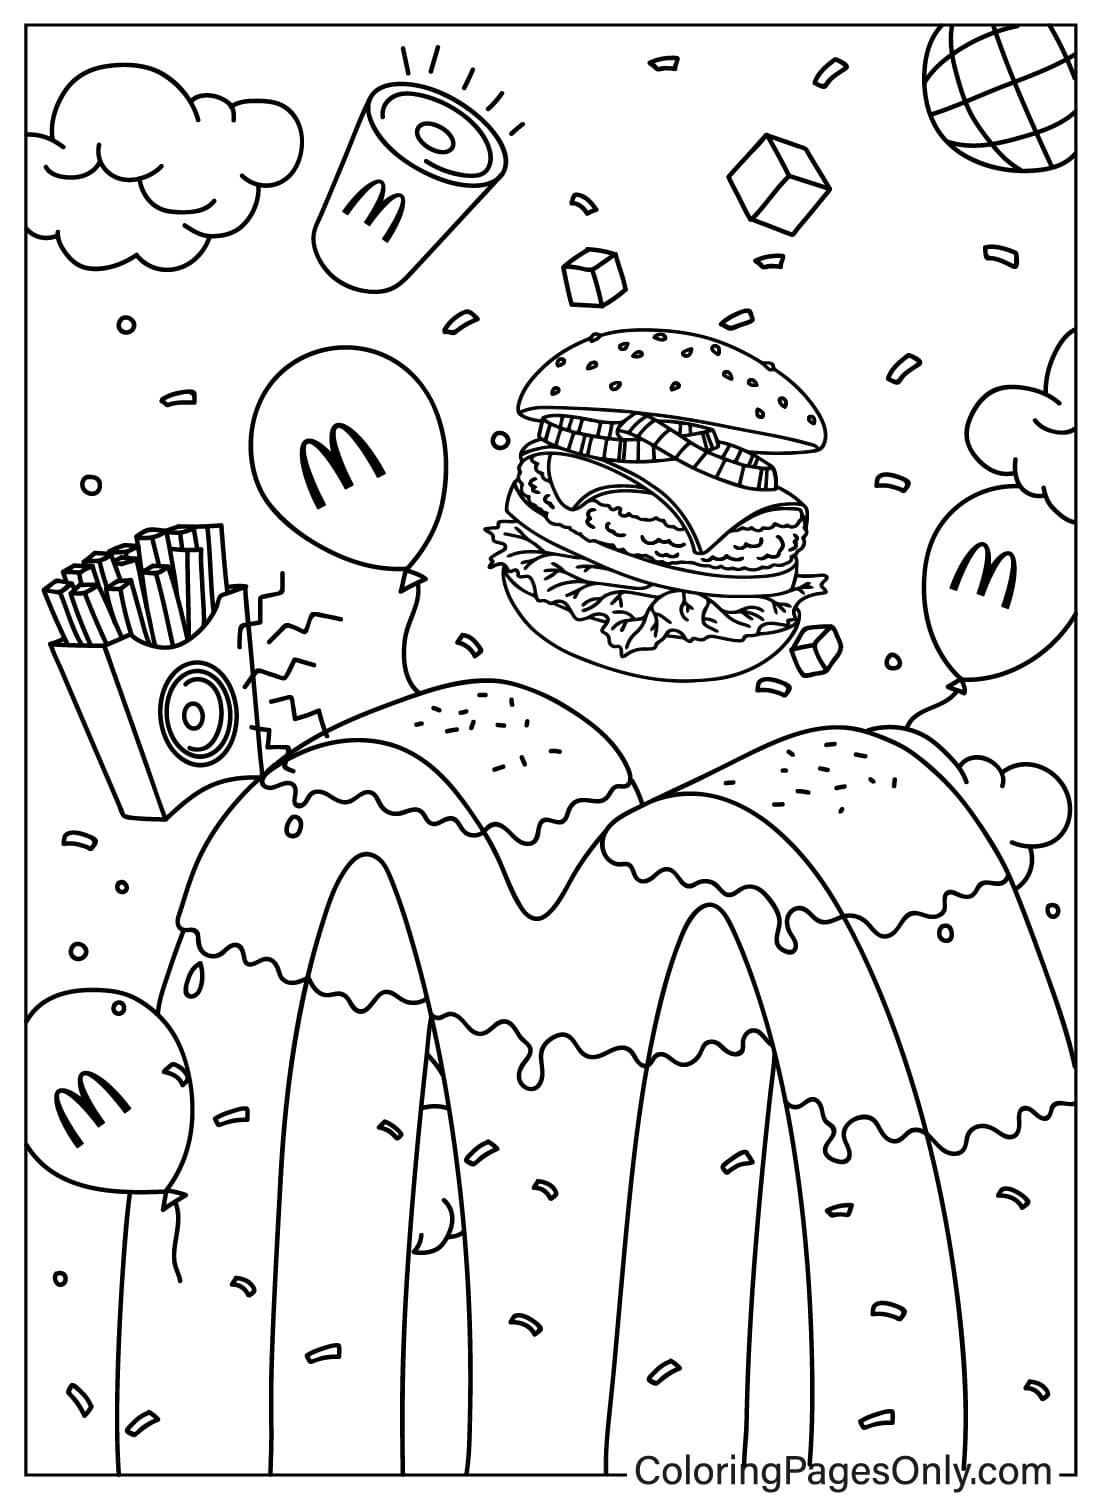 Desenhando uma página para colorir do McDonalds do McDonald's